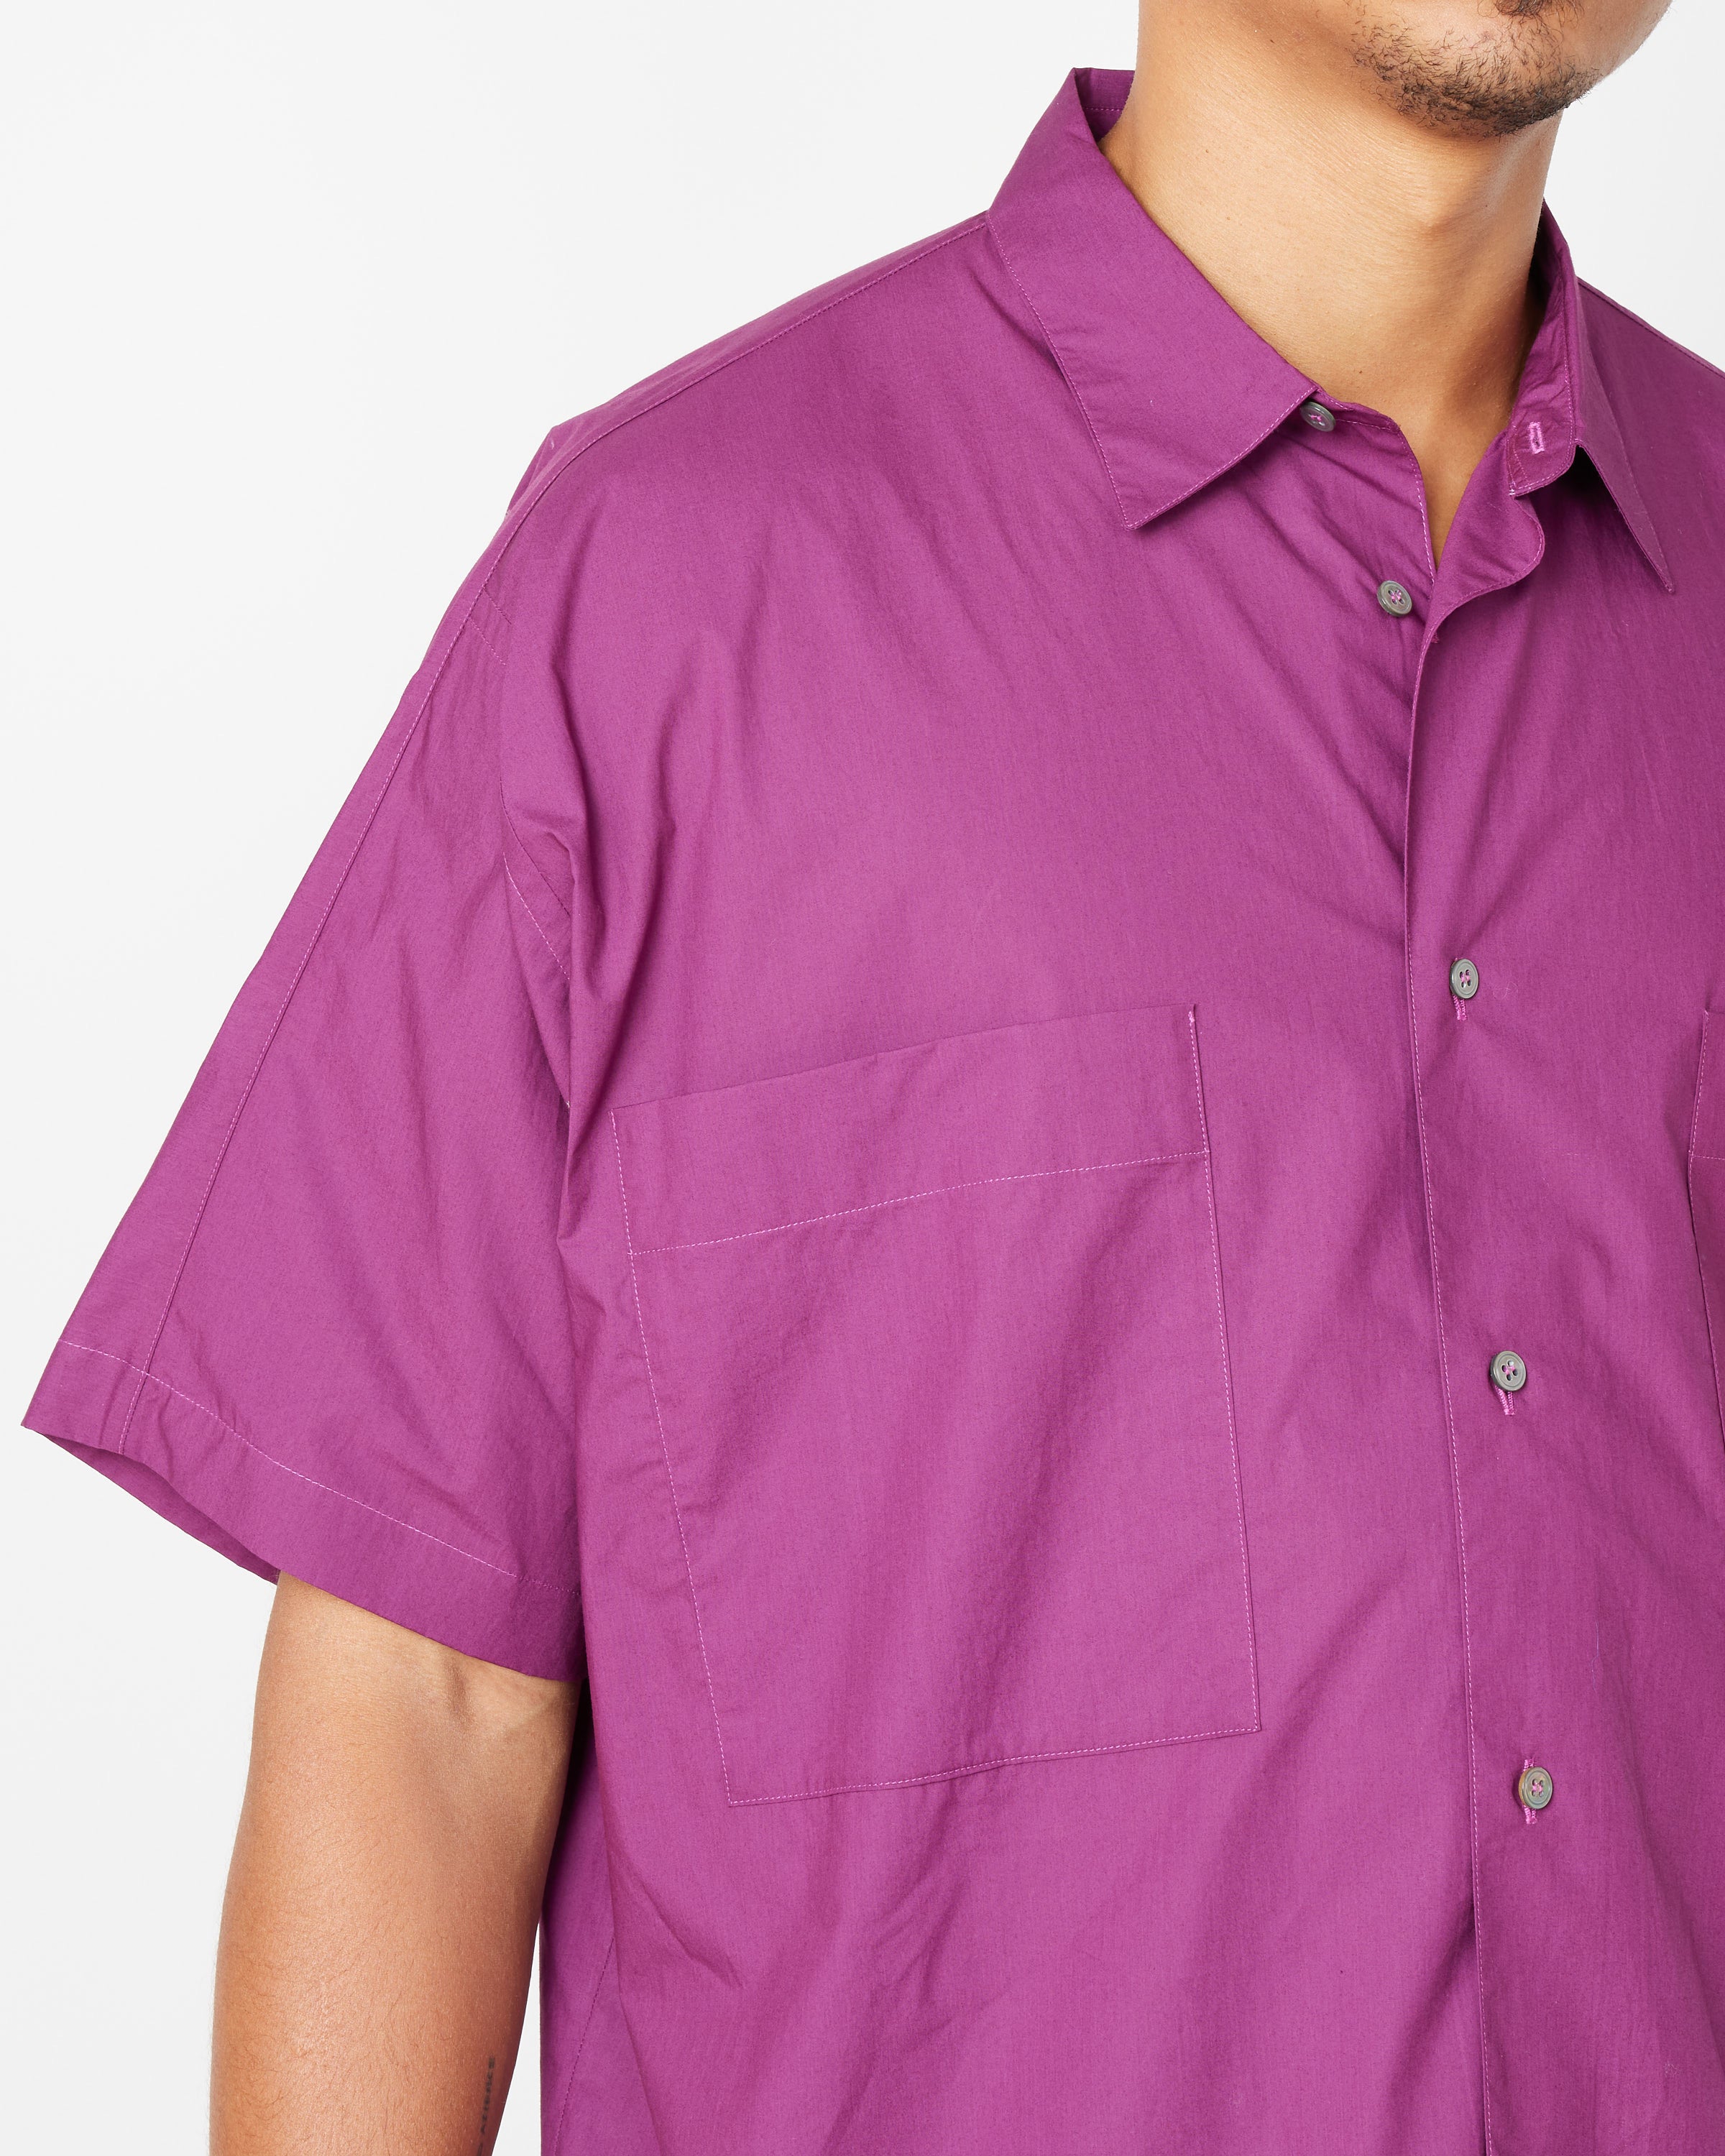 Boxy Short-Sleeve Shirt